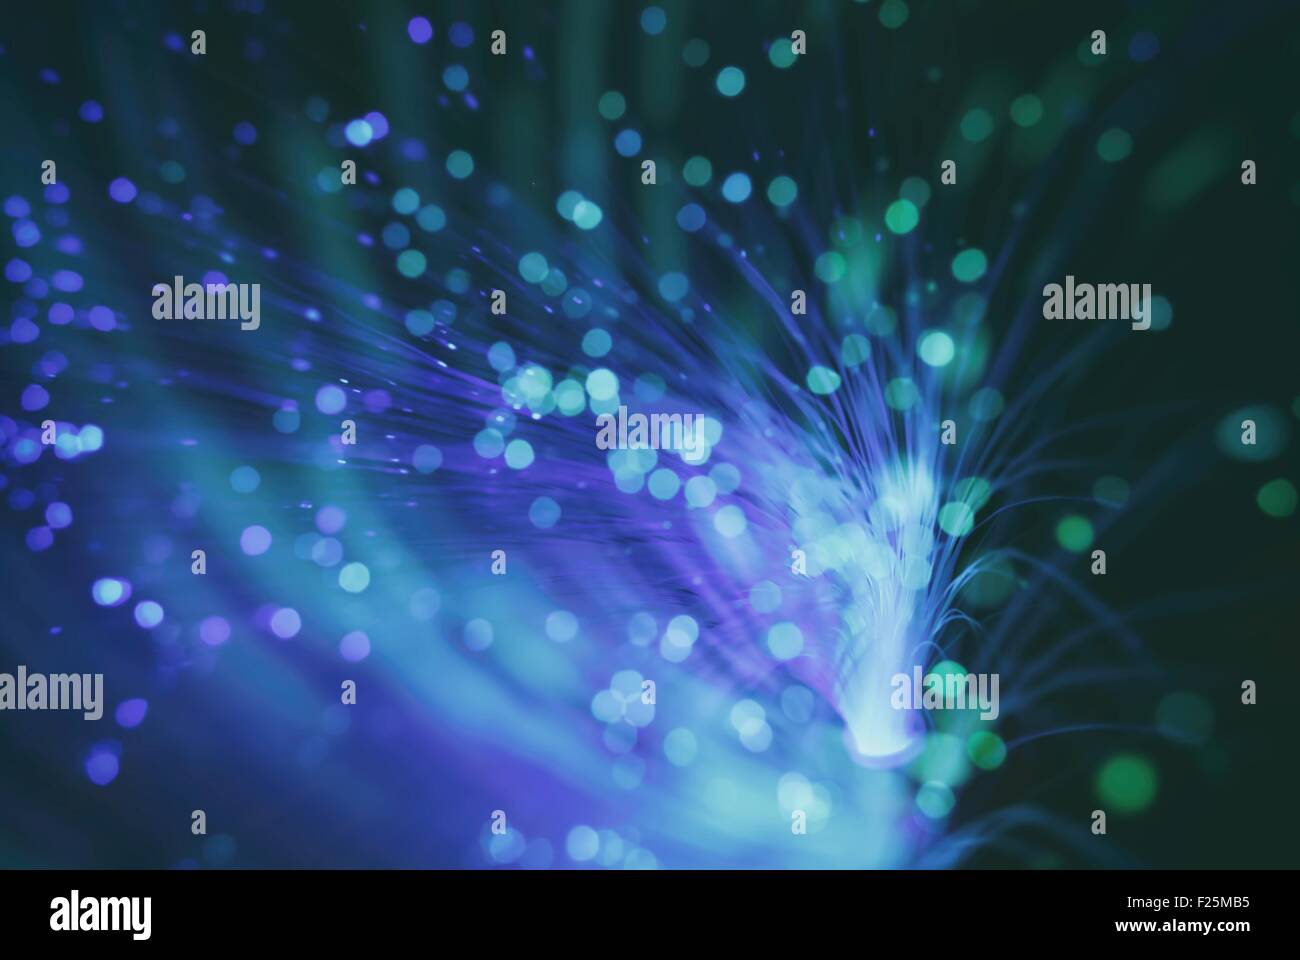 Particelle colorate volare nello spazio della fibra ottica e volteggiare ( abstract blur sullo sfondo ) Foto Stock